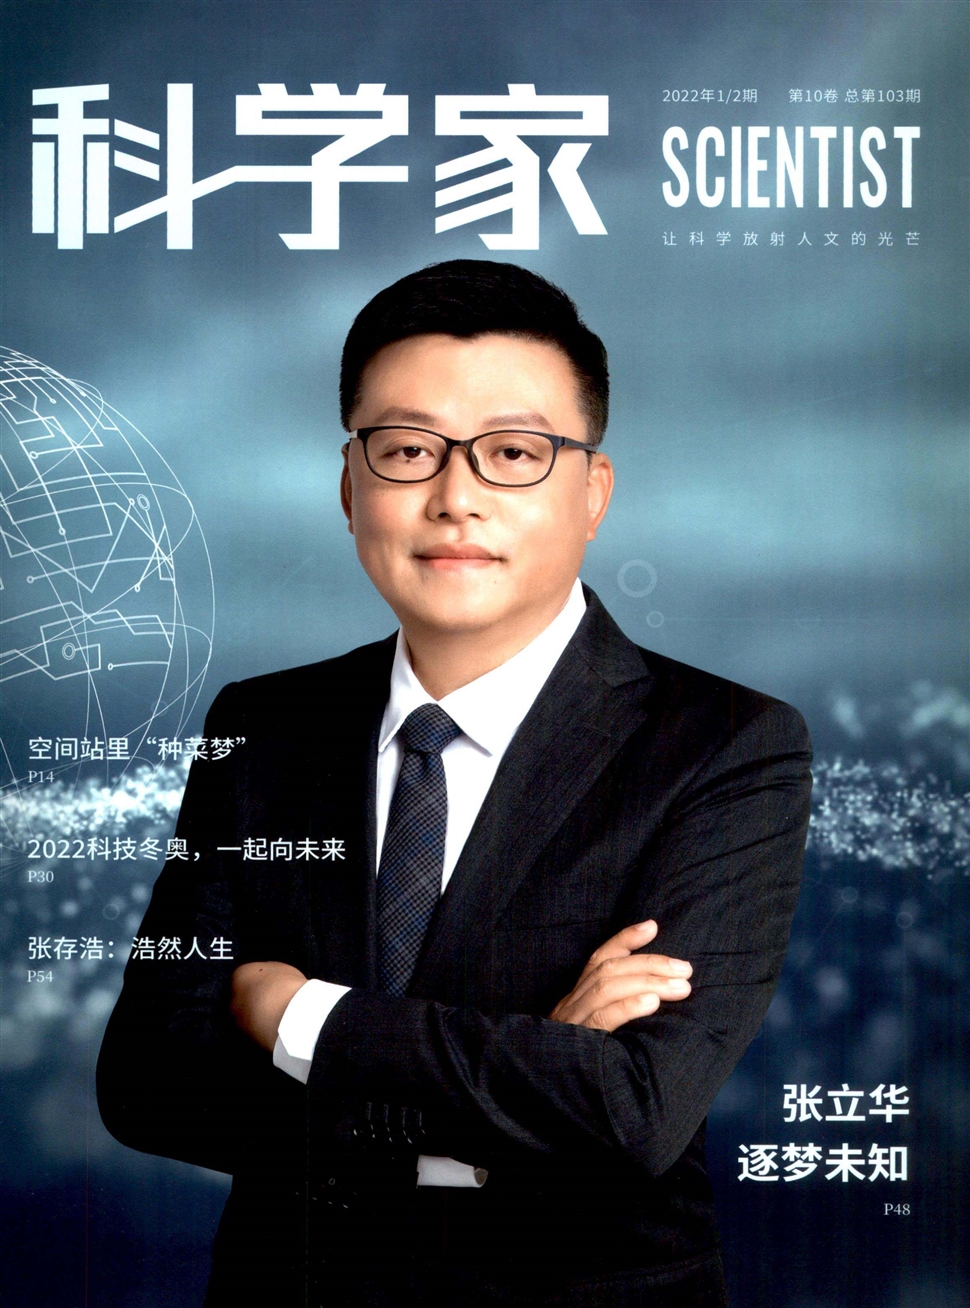 科学家杂志